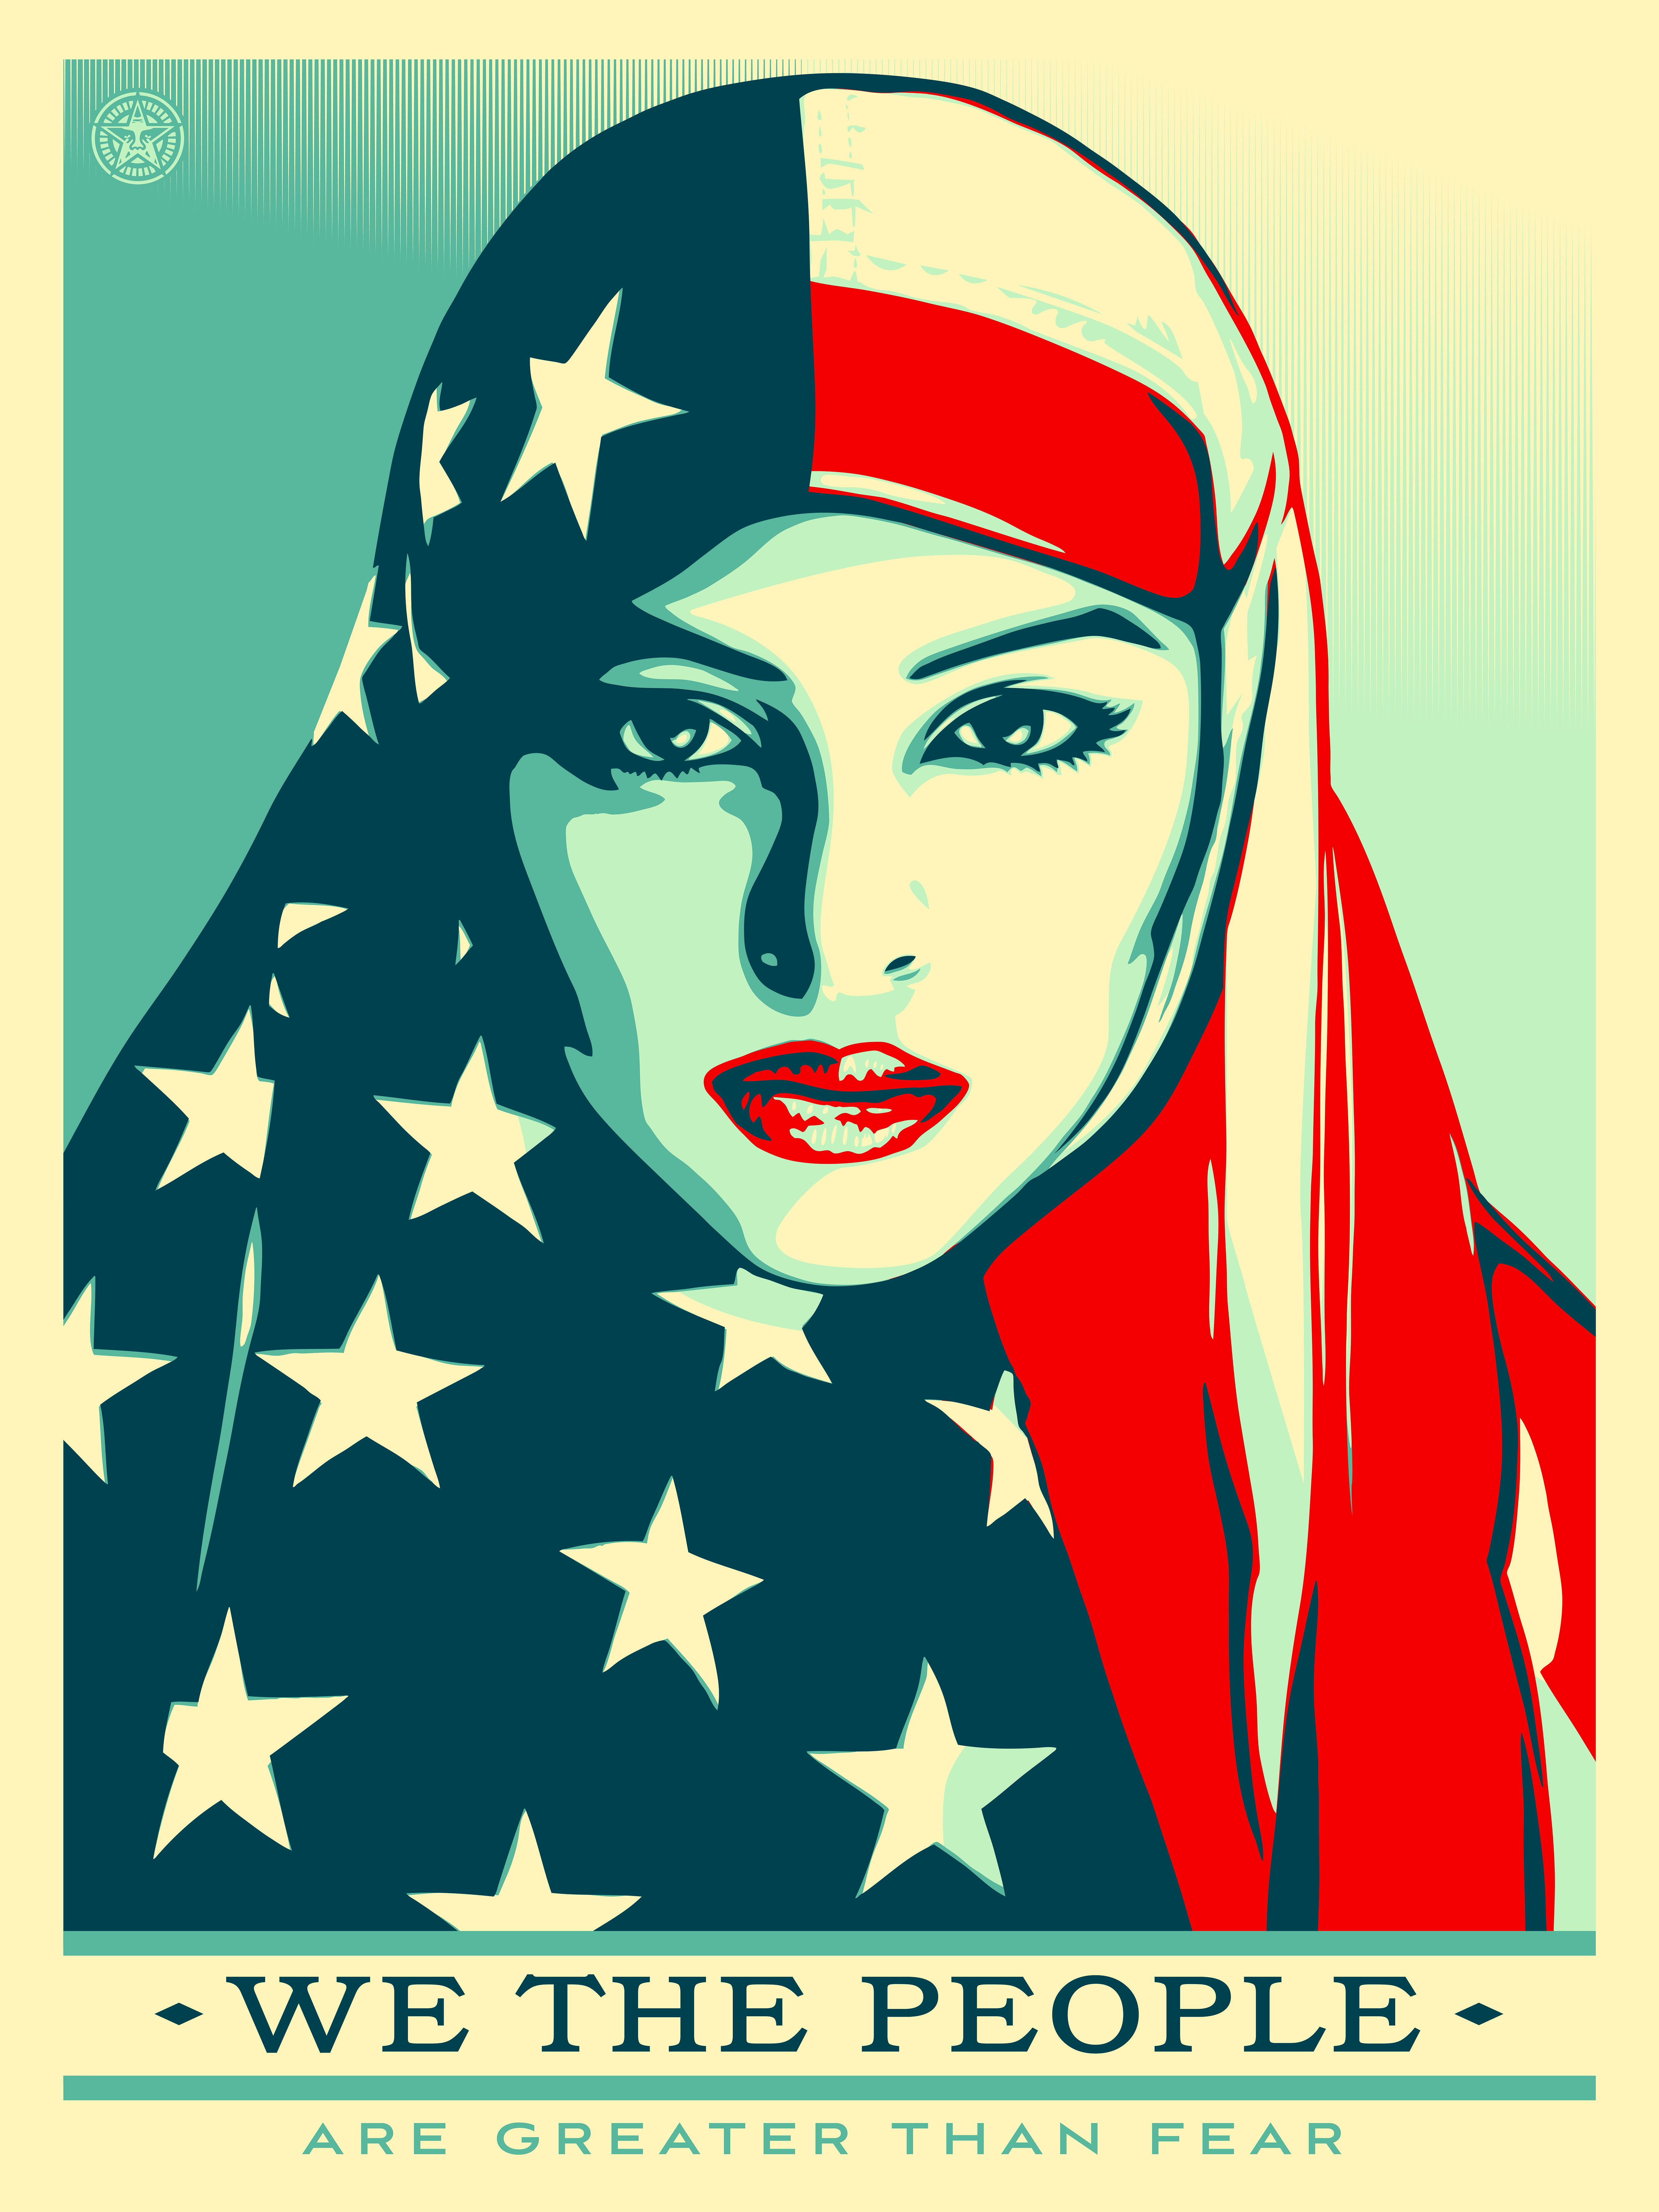 Femme, musulmane, noire, latino: les trois images anti-Trump de l’artiste qui avait encensé Obama